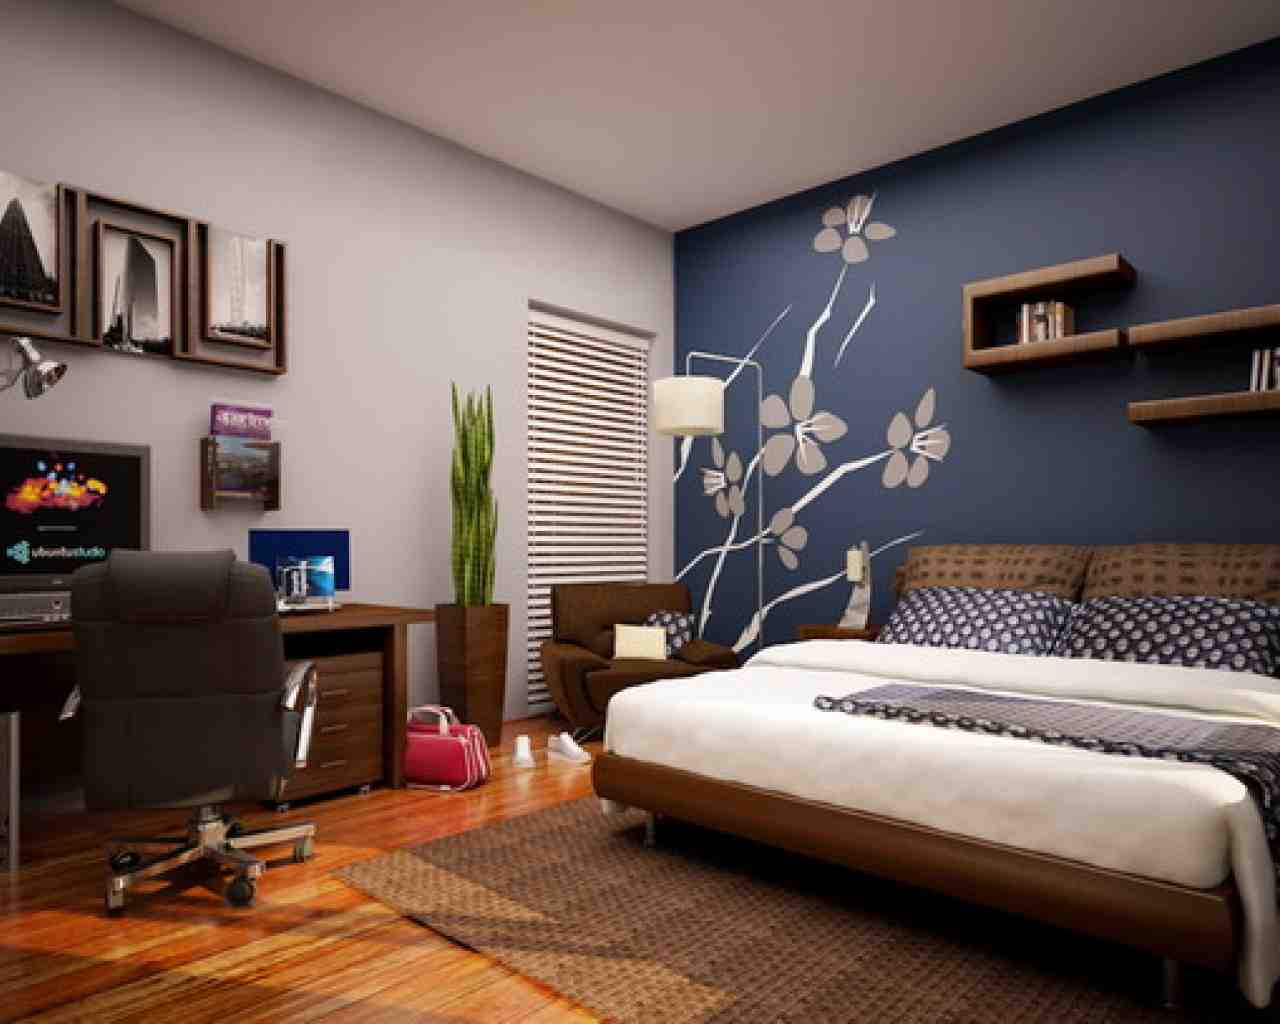 Decorating Bedroom Walls Pinterest